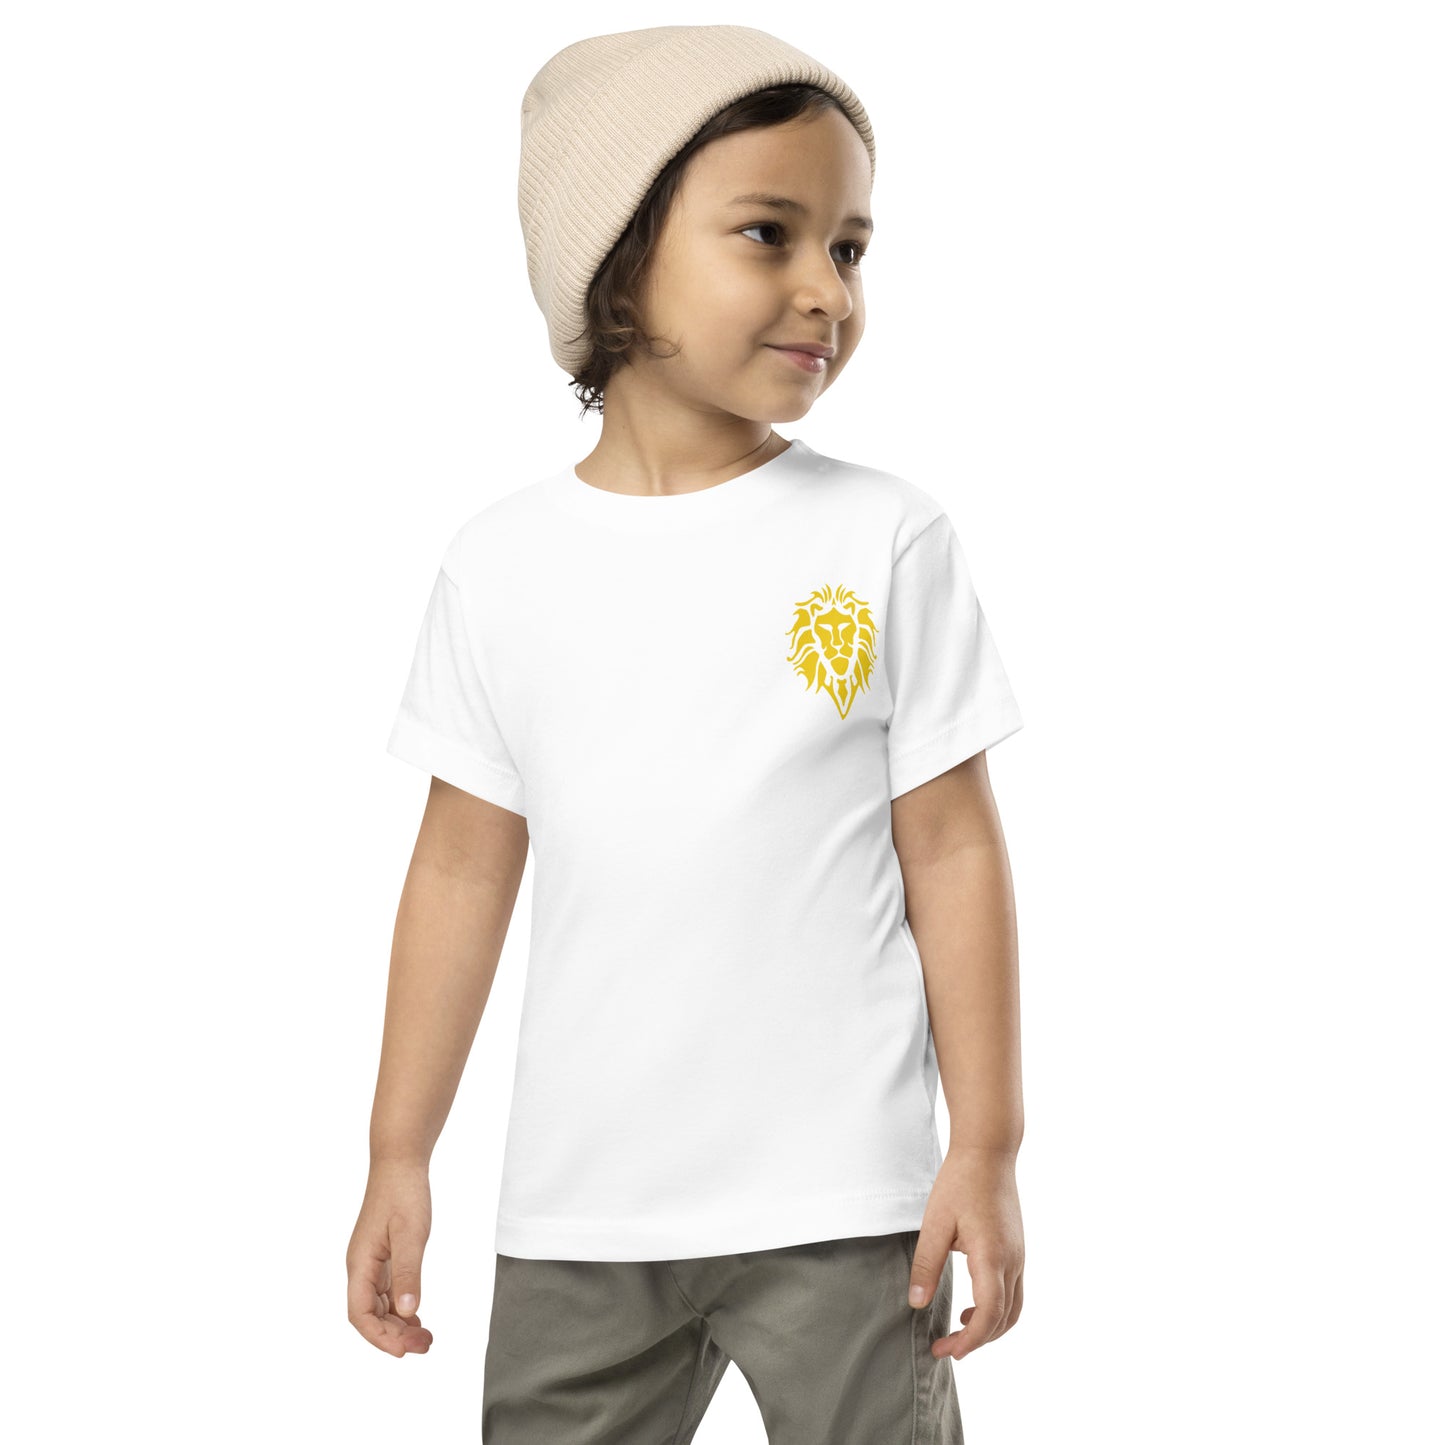 Toddler Short Sleeve Tee - Lion Logo